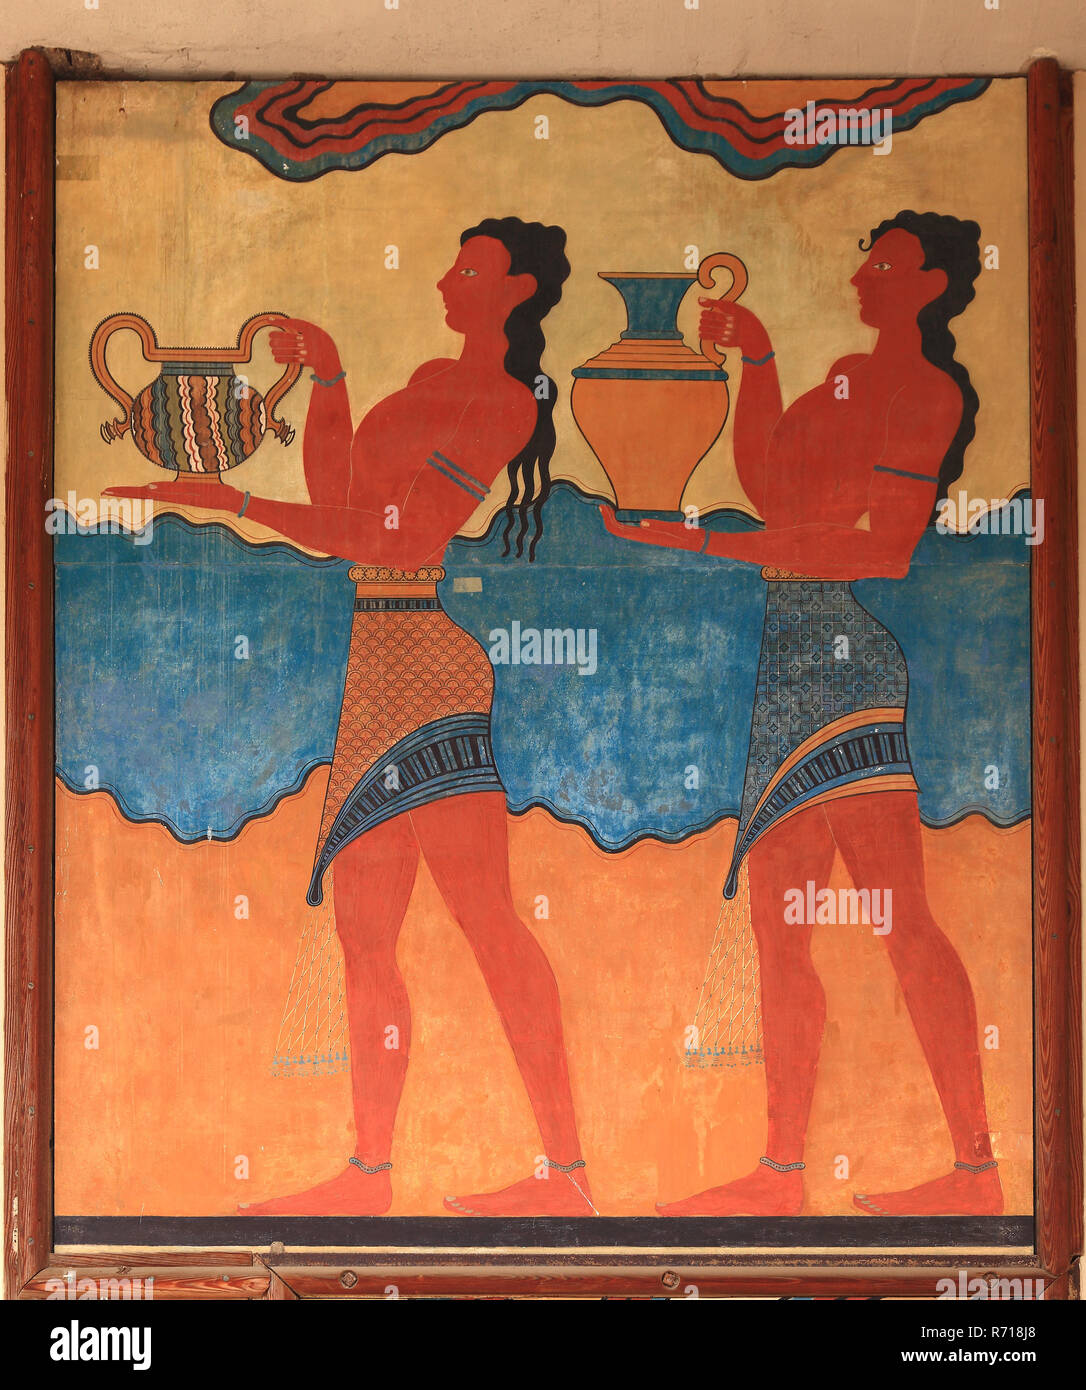 Fresque, Palais de la civilisation minoenne, Knossos, Crète, Grèce Banque D'Images